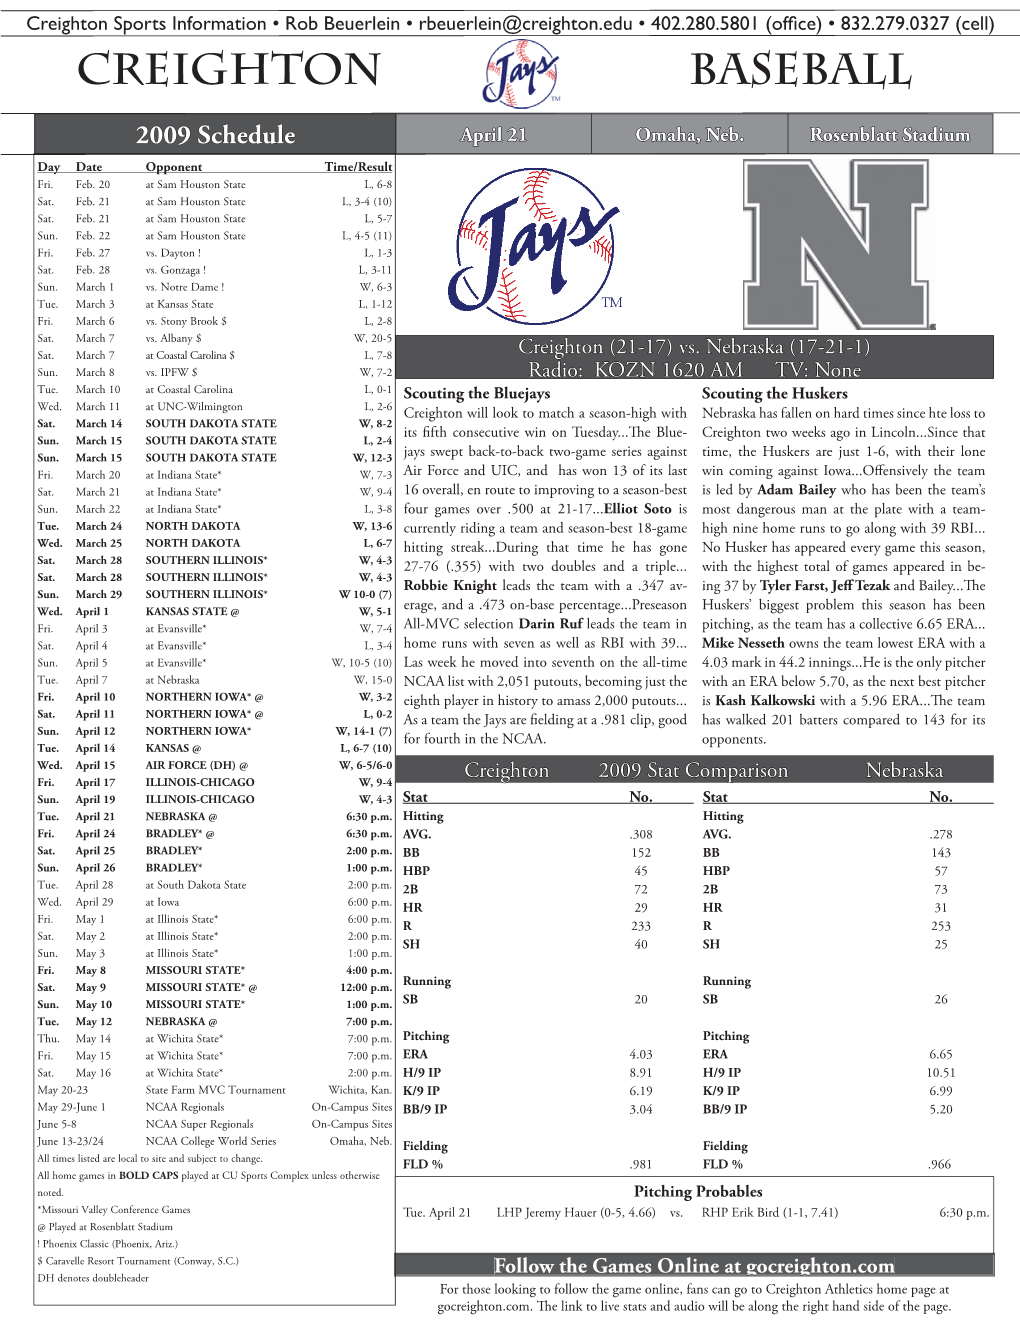 4-21 Nebraska Notes.Indd